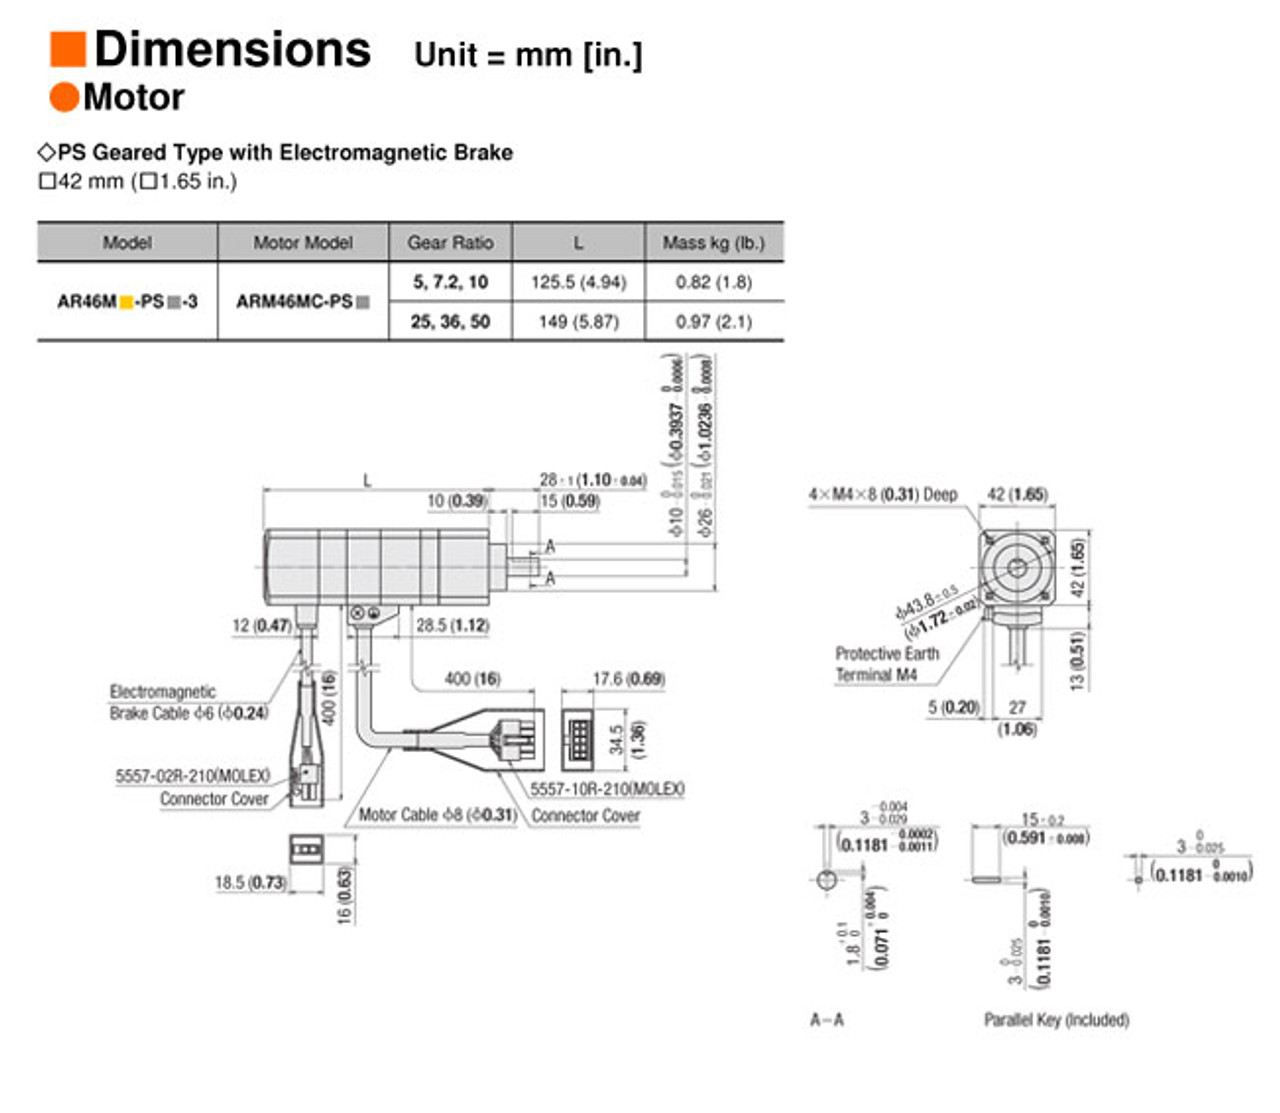 ARM46MC-PS10 - Dimensions